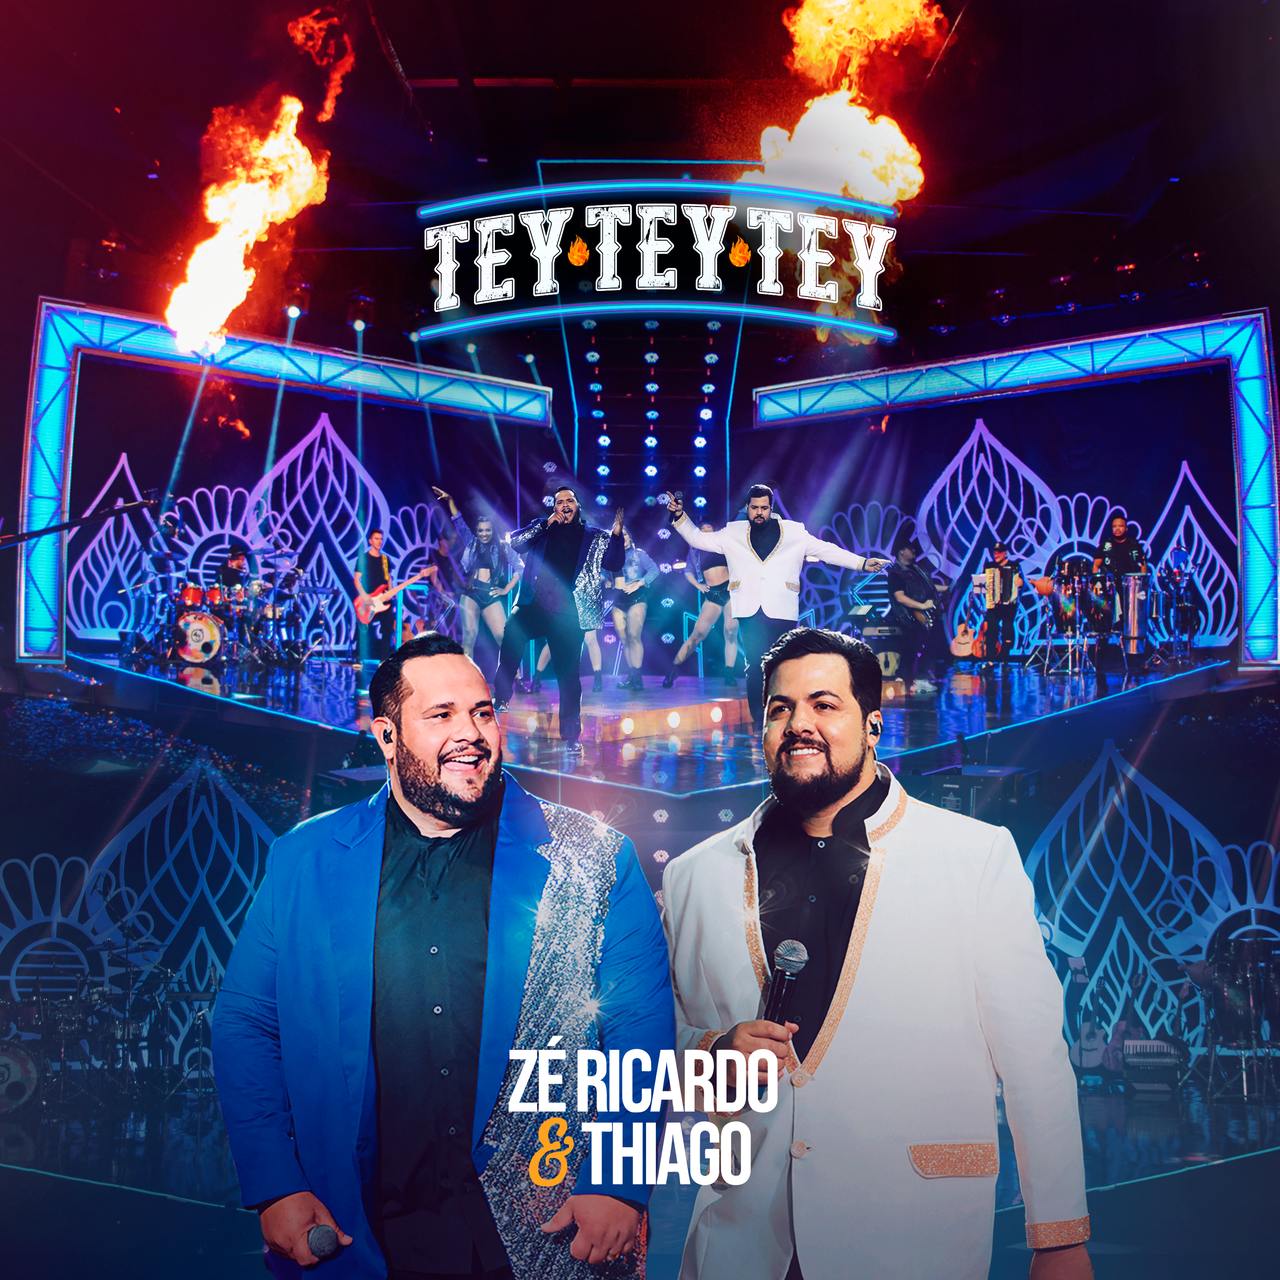 Zé Ricardo & Thiago lançam "Tey Tey Tey", primeiro EP de novo projeto gravado em Goiânia 42